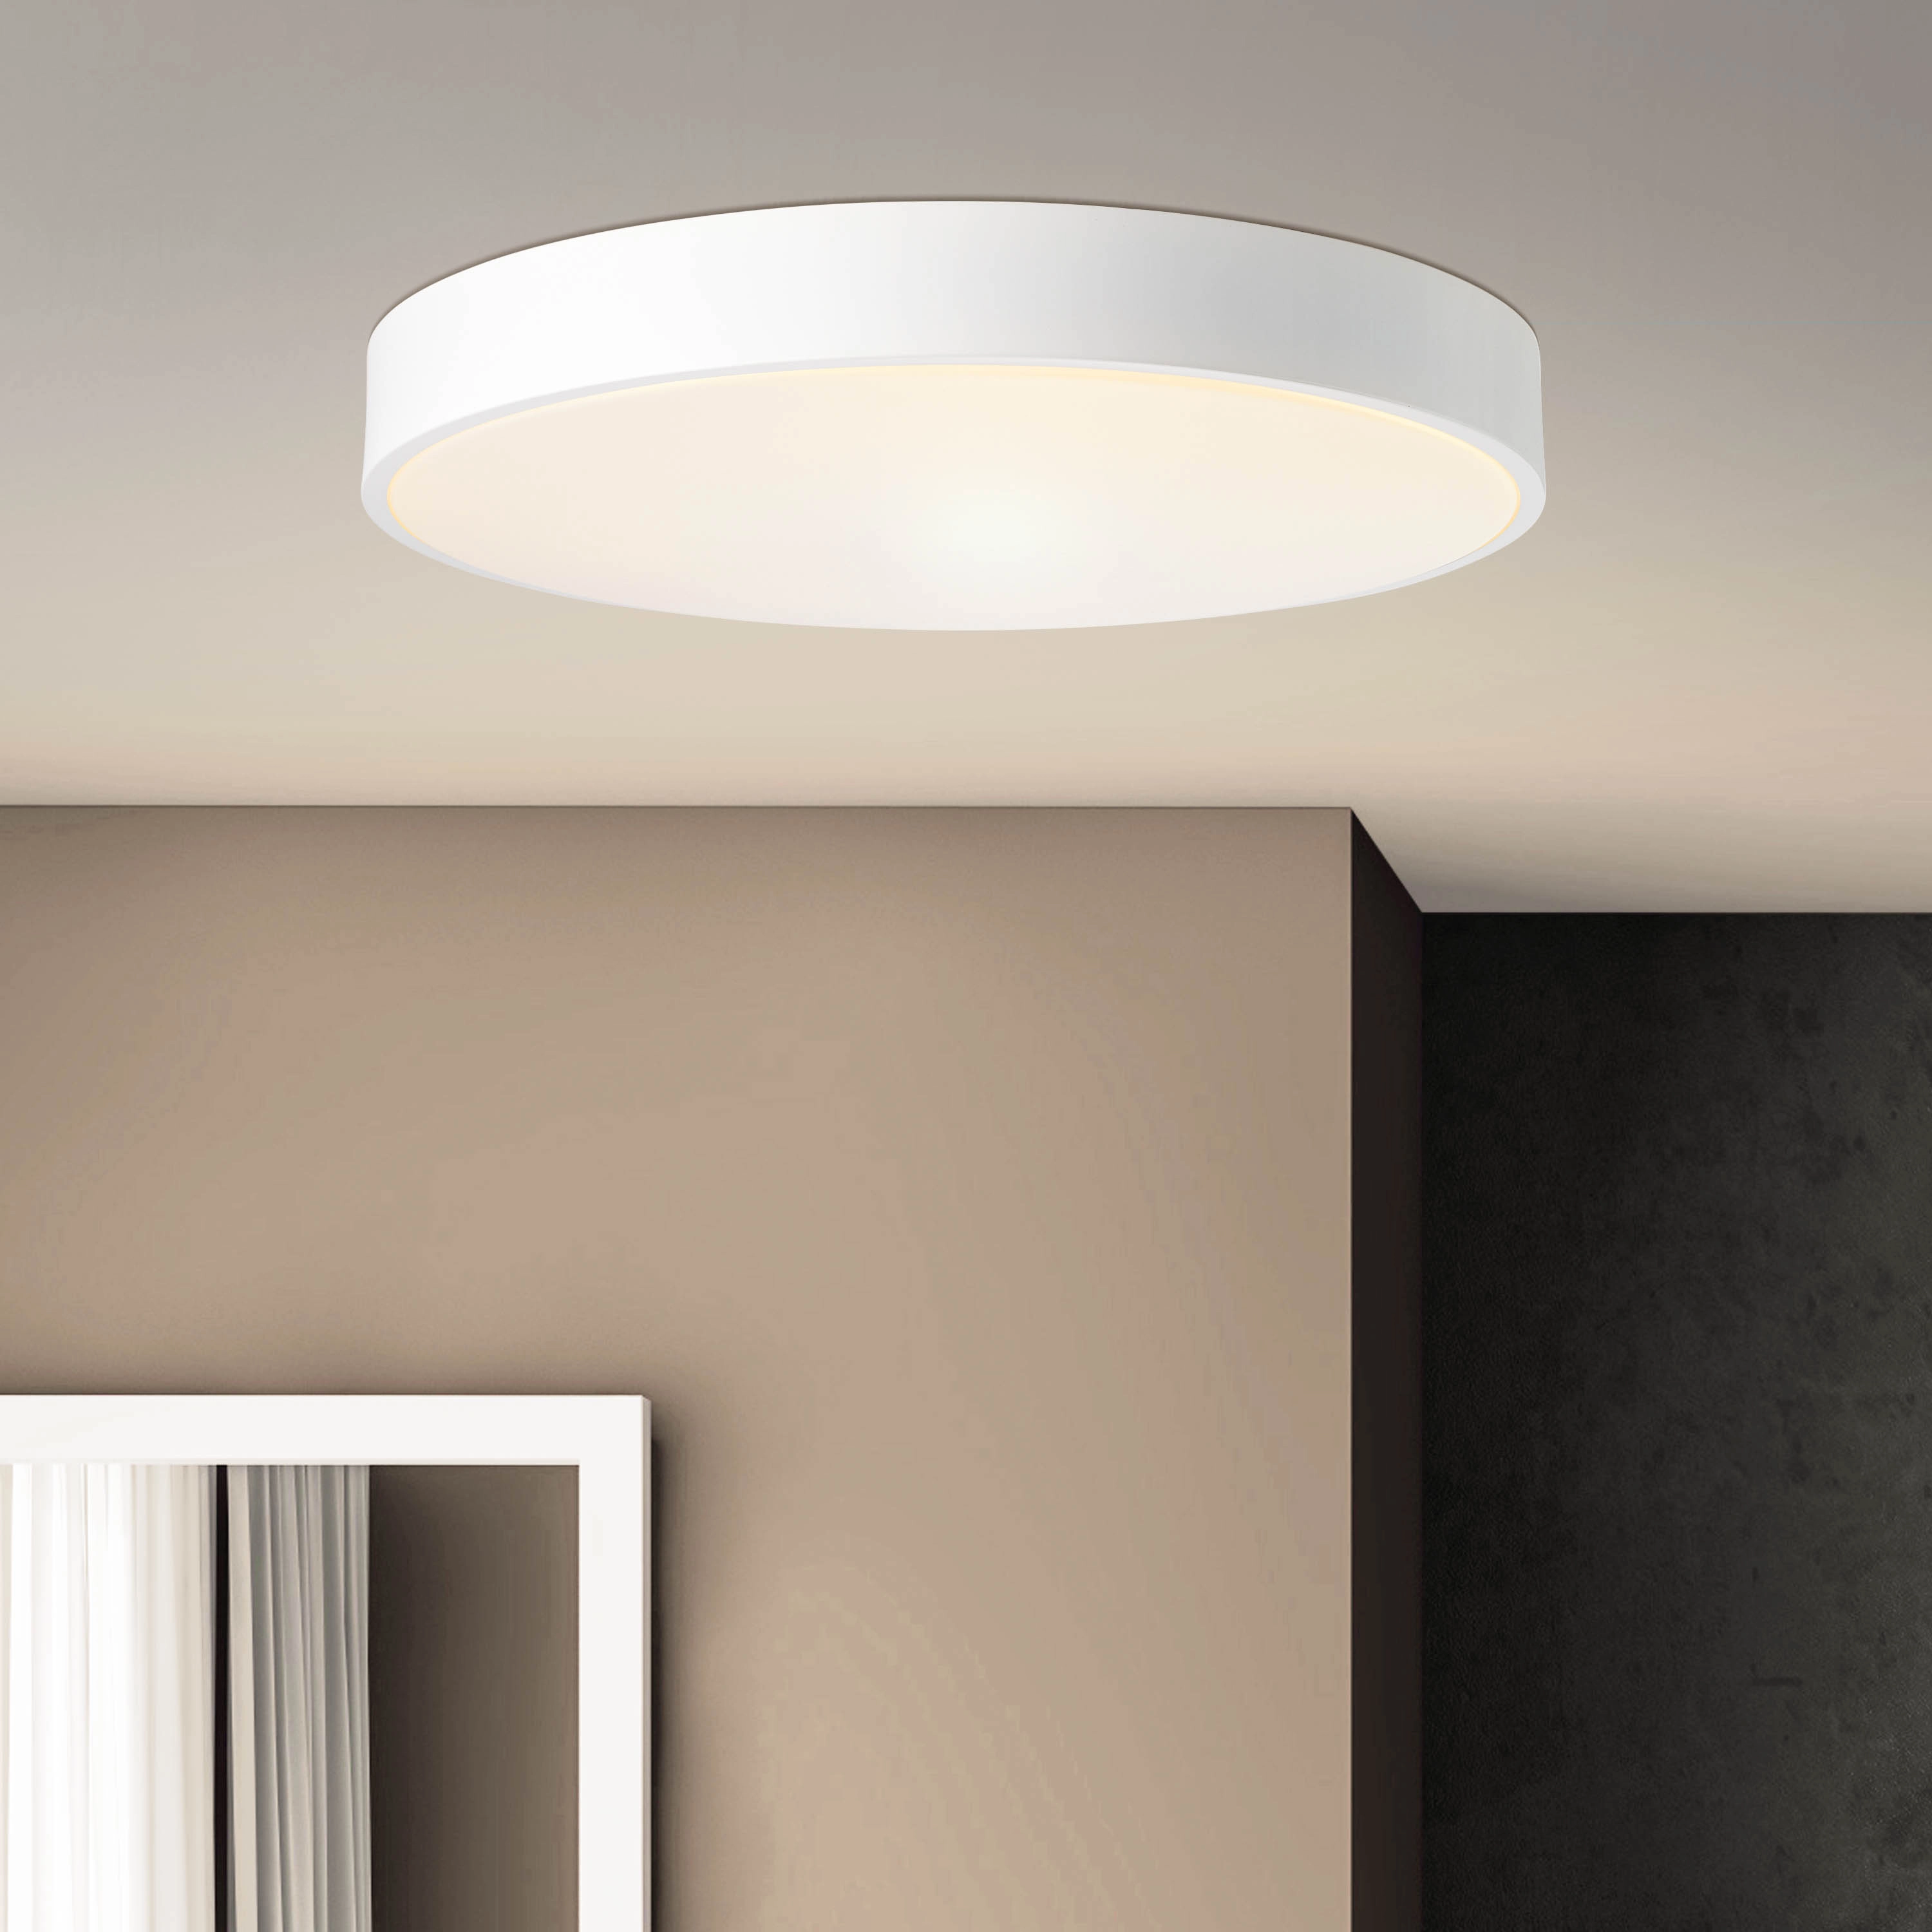 Brilliant LED-Deckenleuchte Slimline Ø 49 cm Sand und Weiß kaufen bei OBI